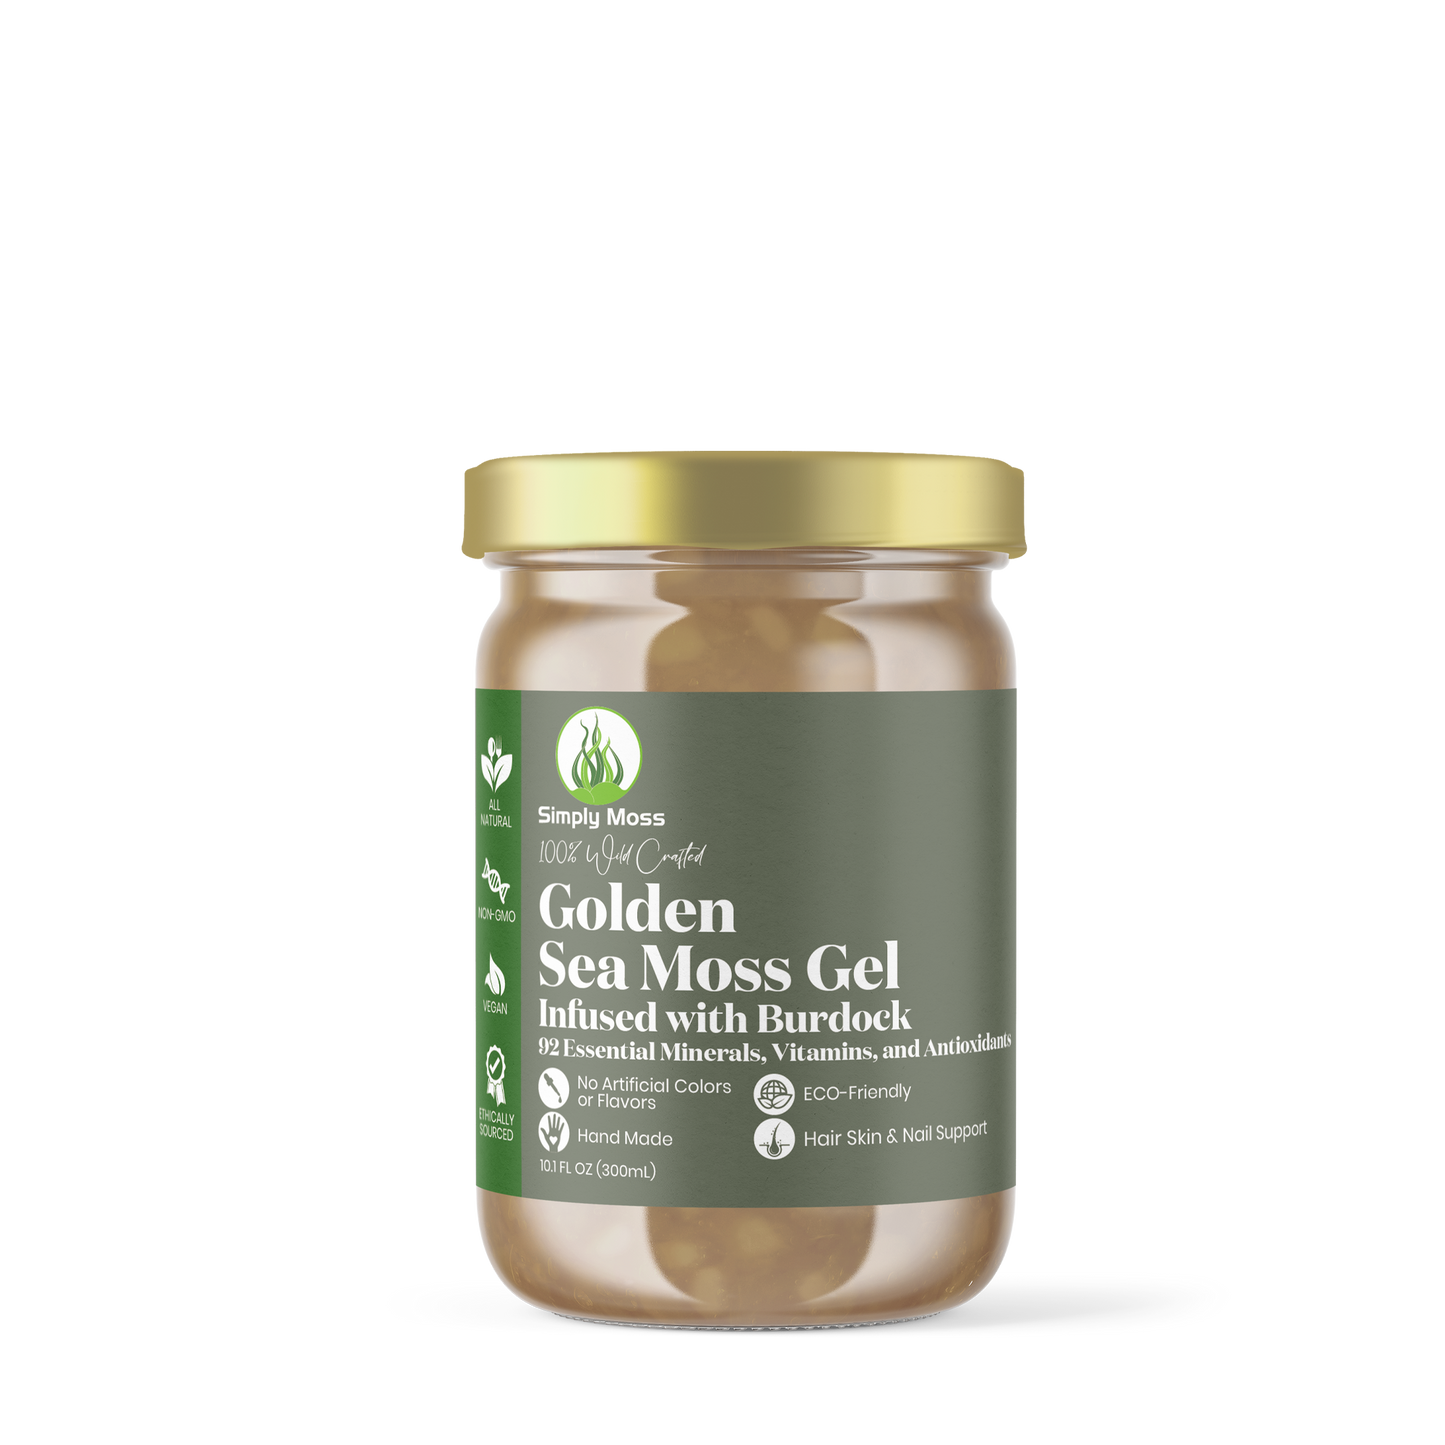 Golden Sea Moss Gel  infused with Burdock